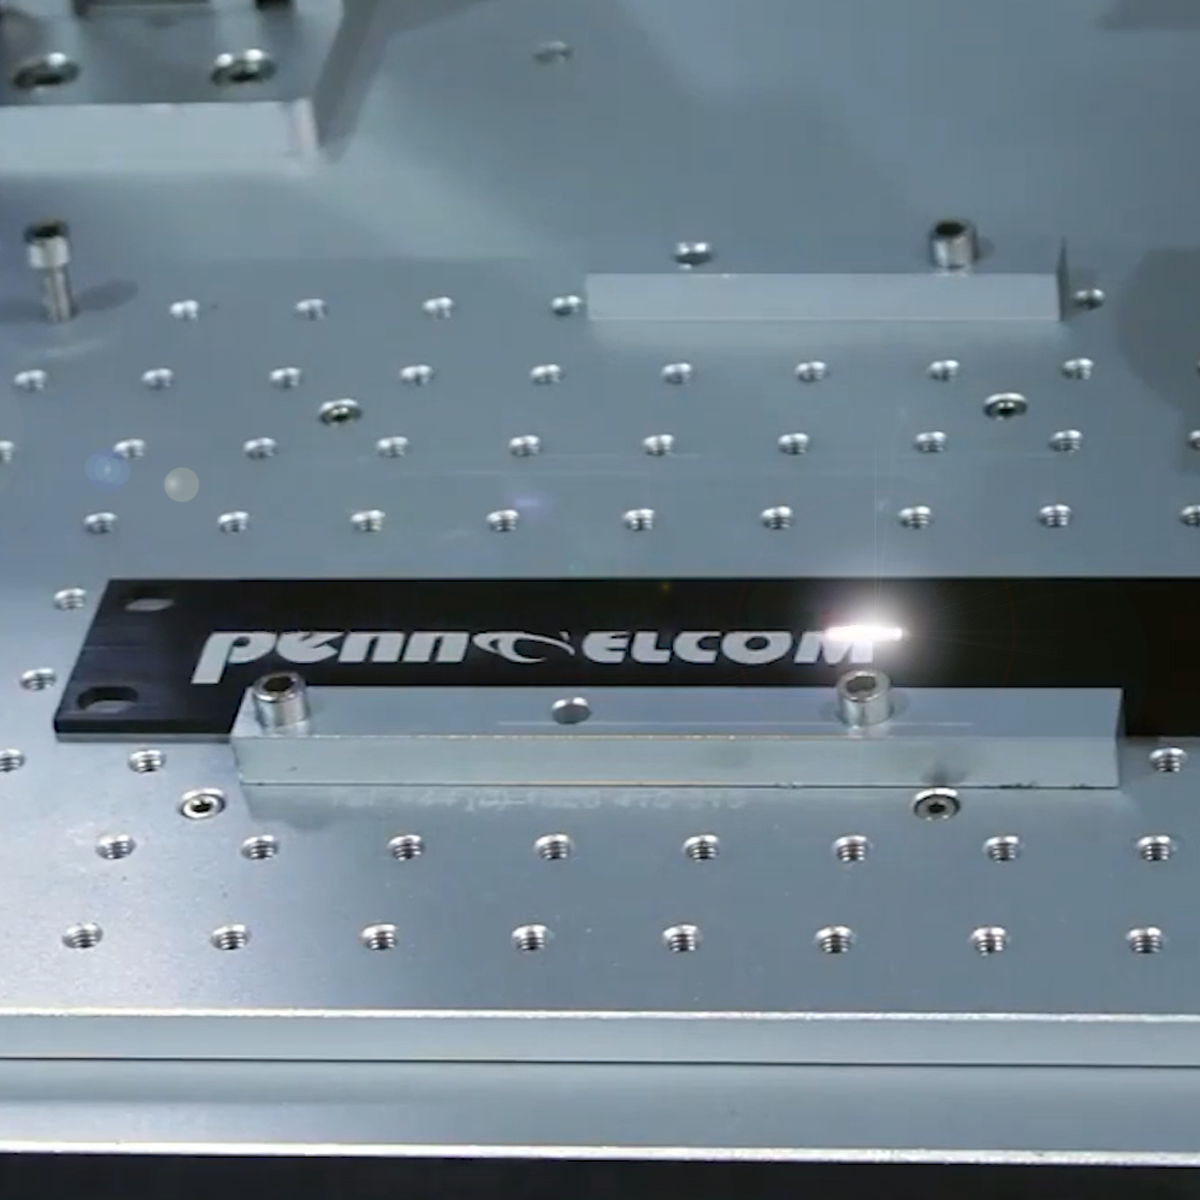 Penn Elcom logo being laser etched on panel 